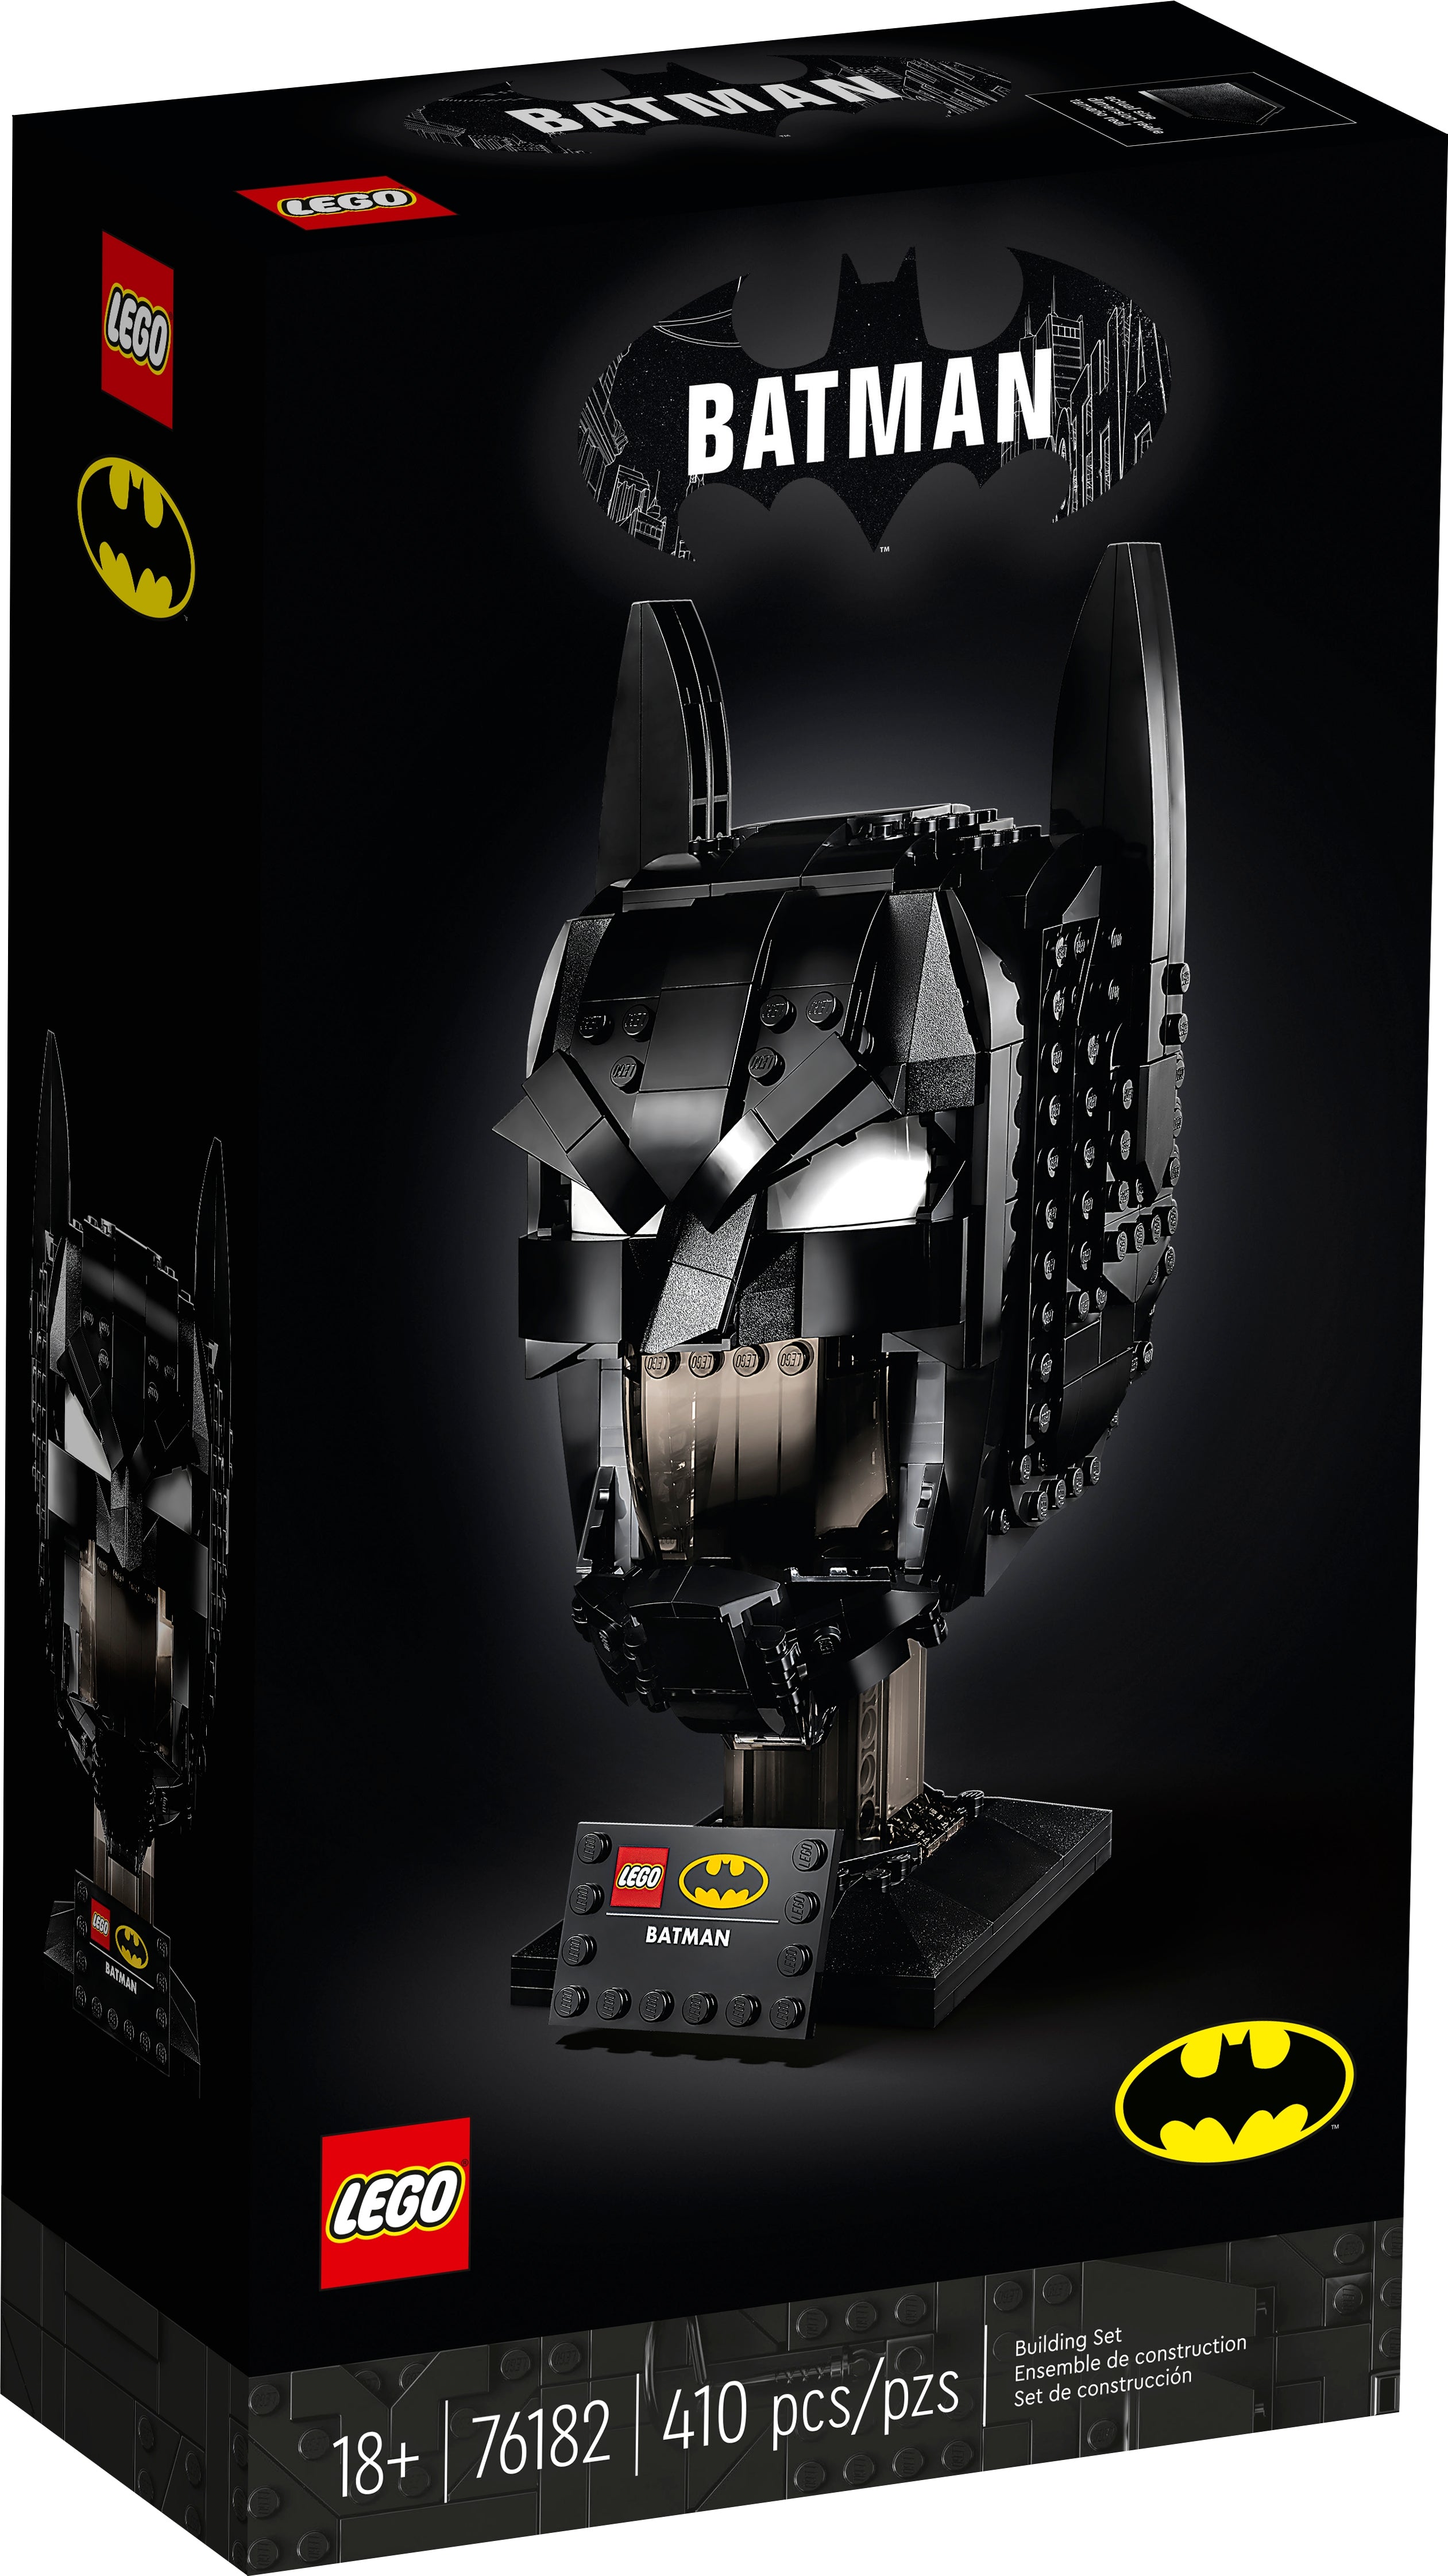 LEGO Batman Batman Helm (76182) - im GOLDSTIEN.SHOP verfügbar mit Gratisversand ab Schweizer Lager! (5702016912999)